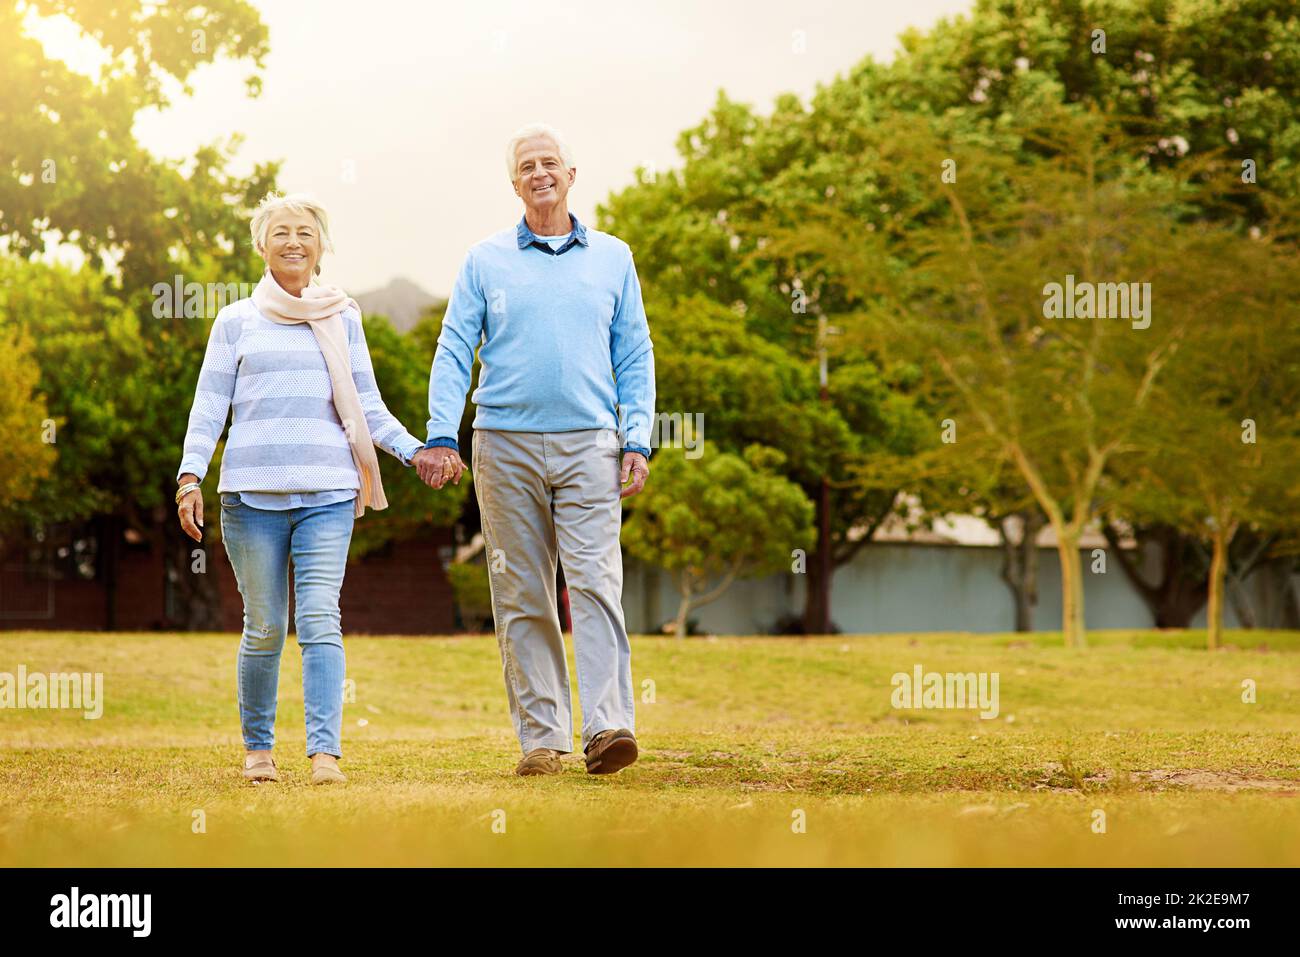 Spaziergang durch den Park. Porträt eines älteren Paares, das gemeinsam in einem Park spazieren geht. Stockfoto